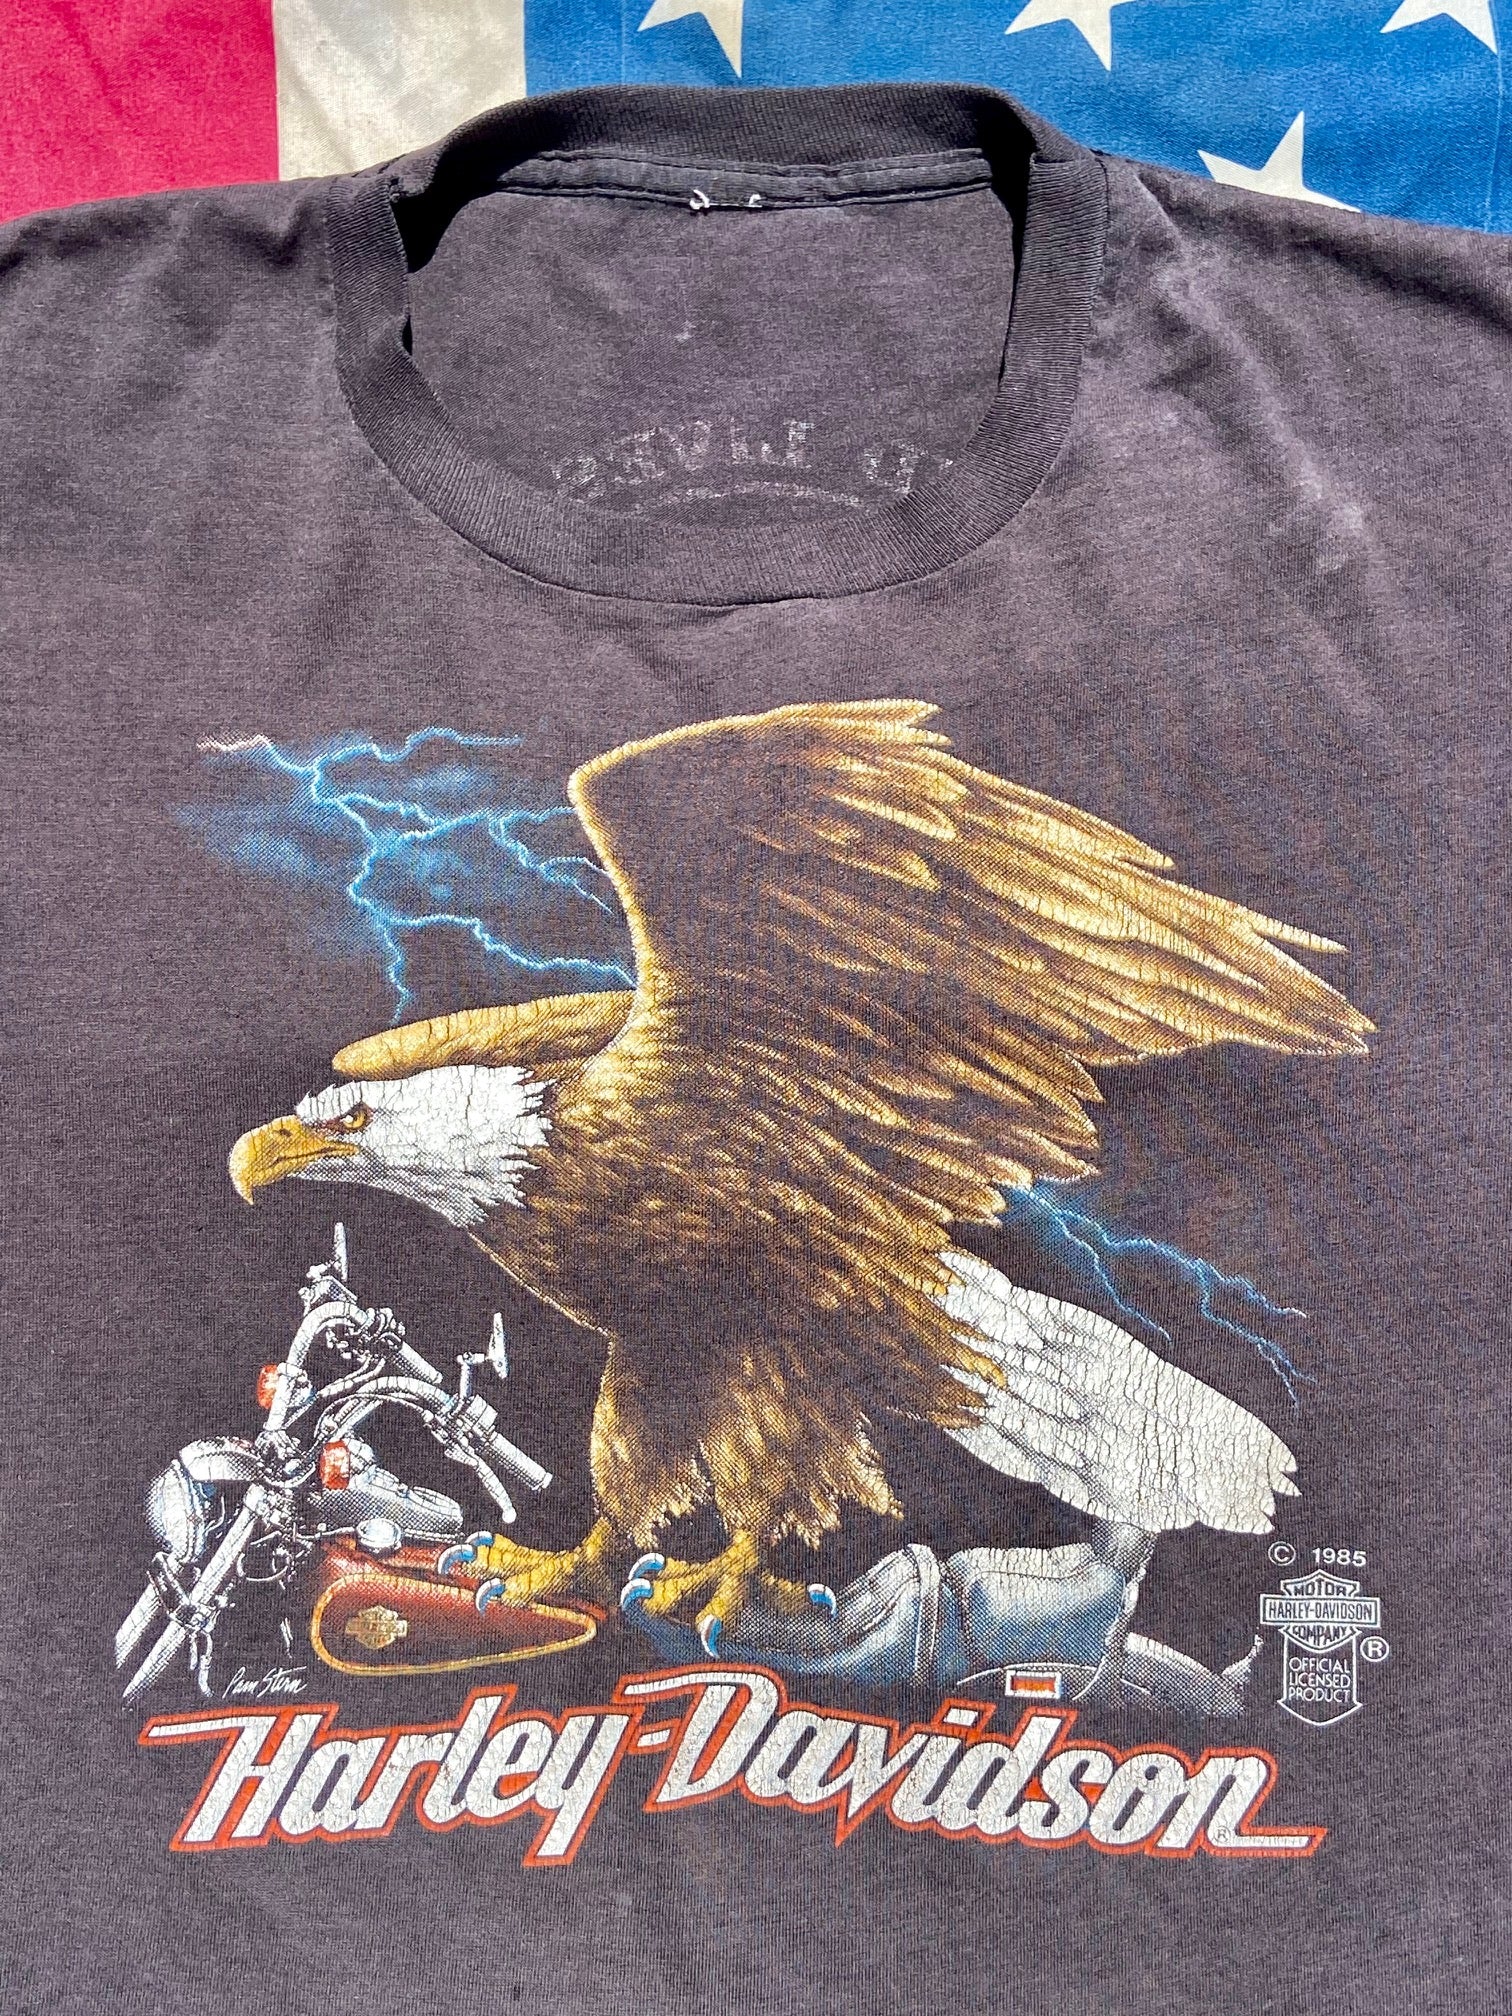 Vintage Harley Davidson T-shirt. American Eagle classic design